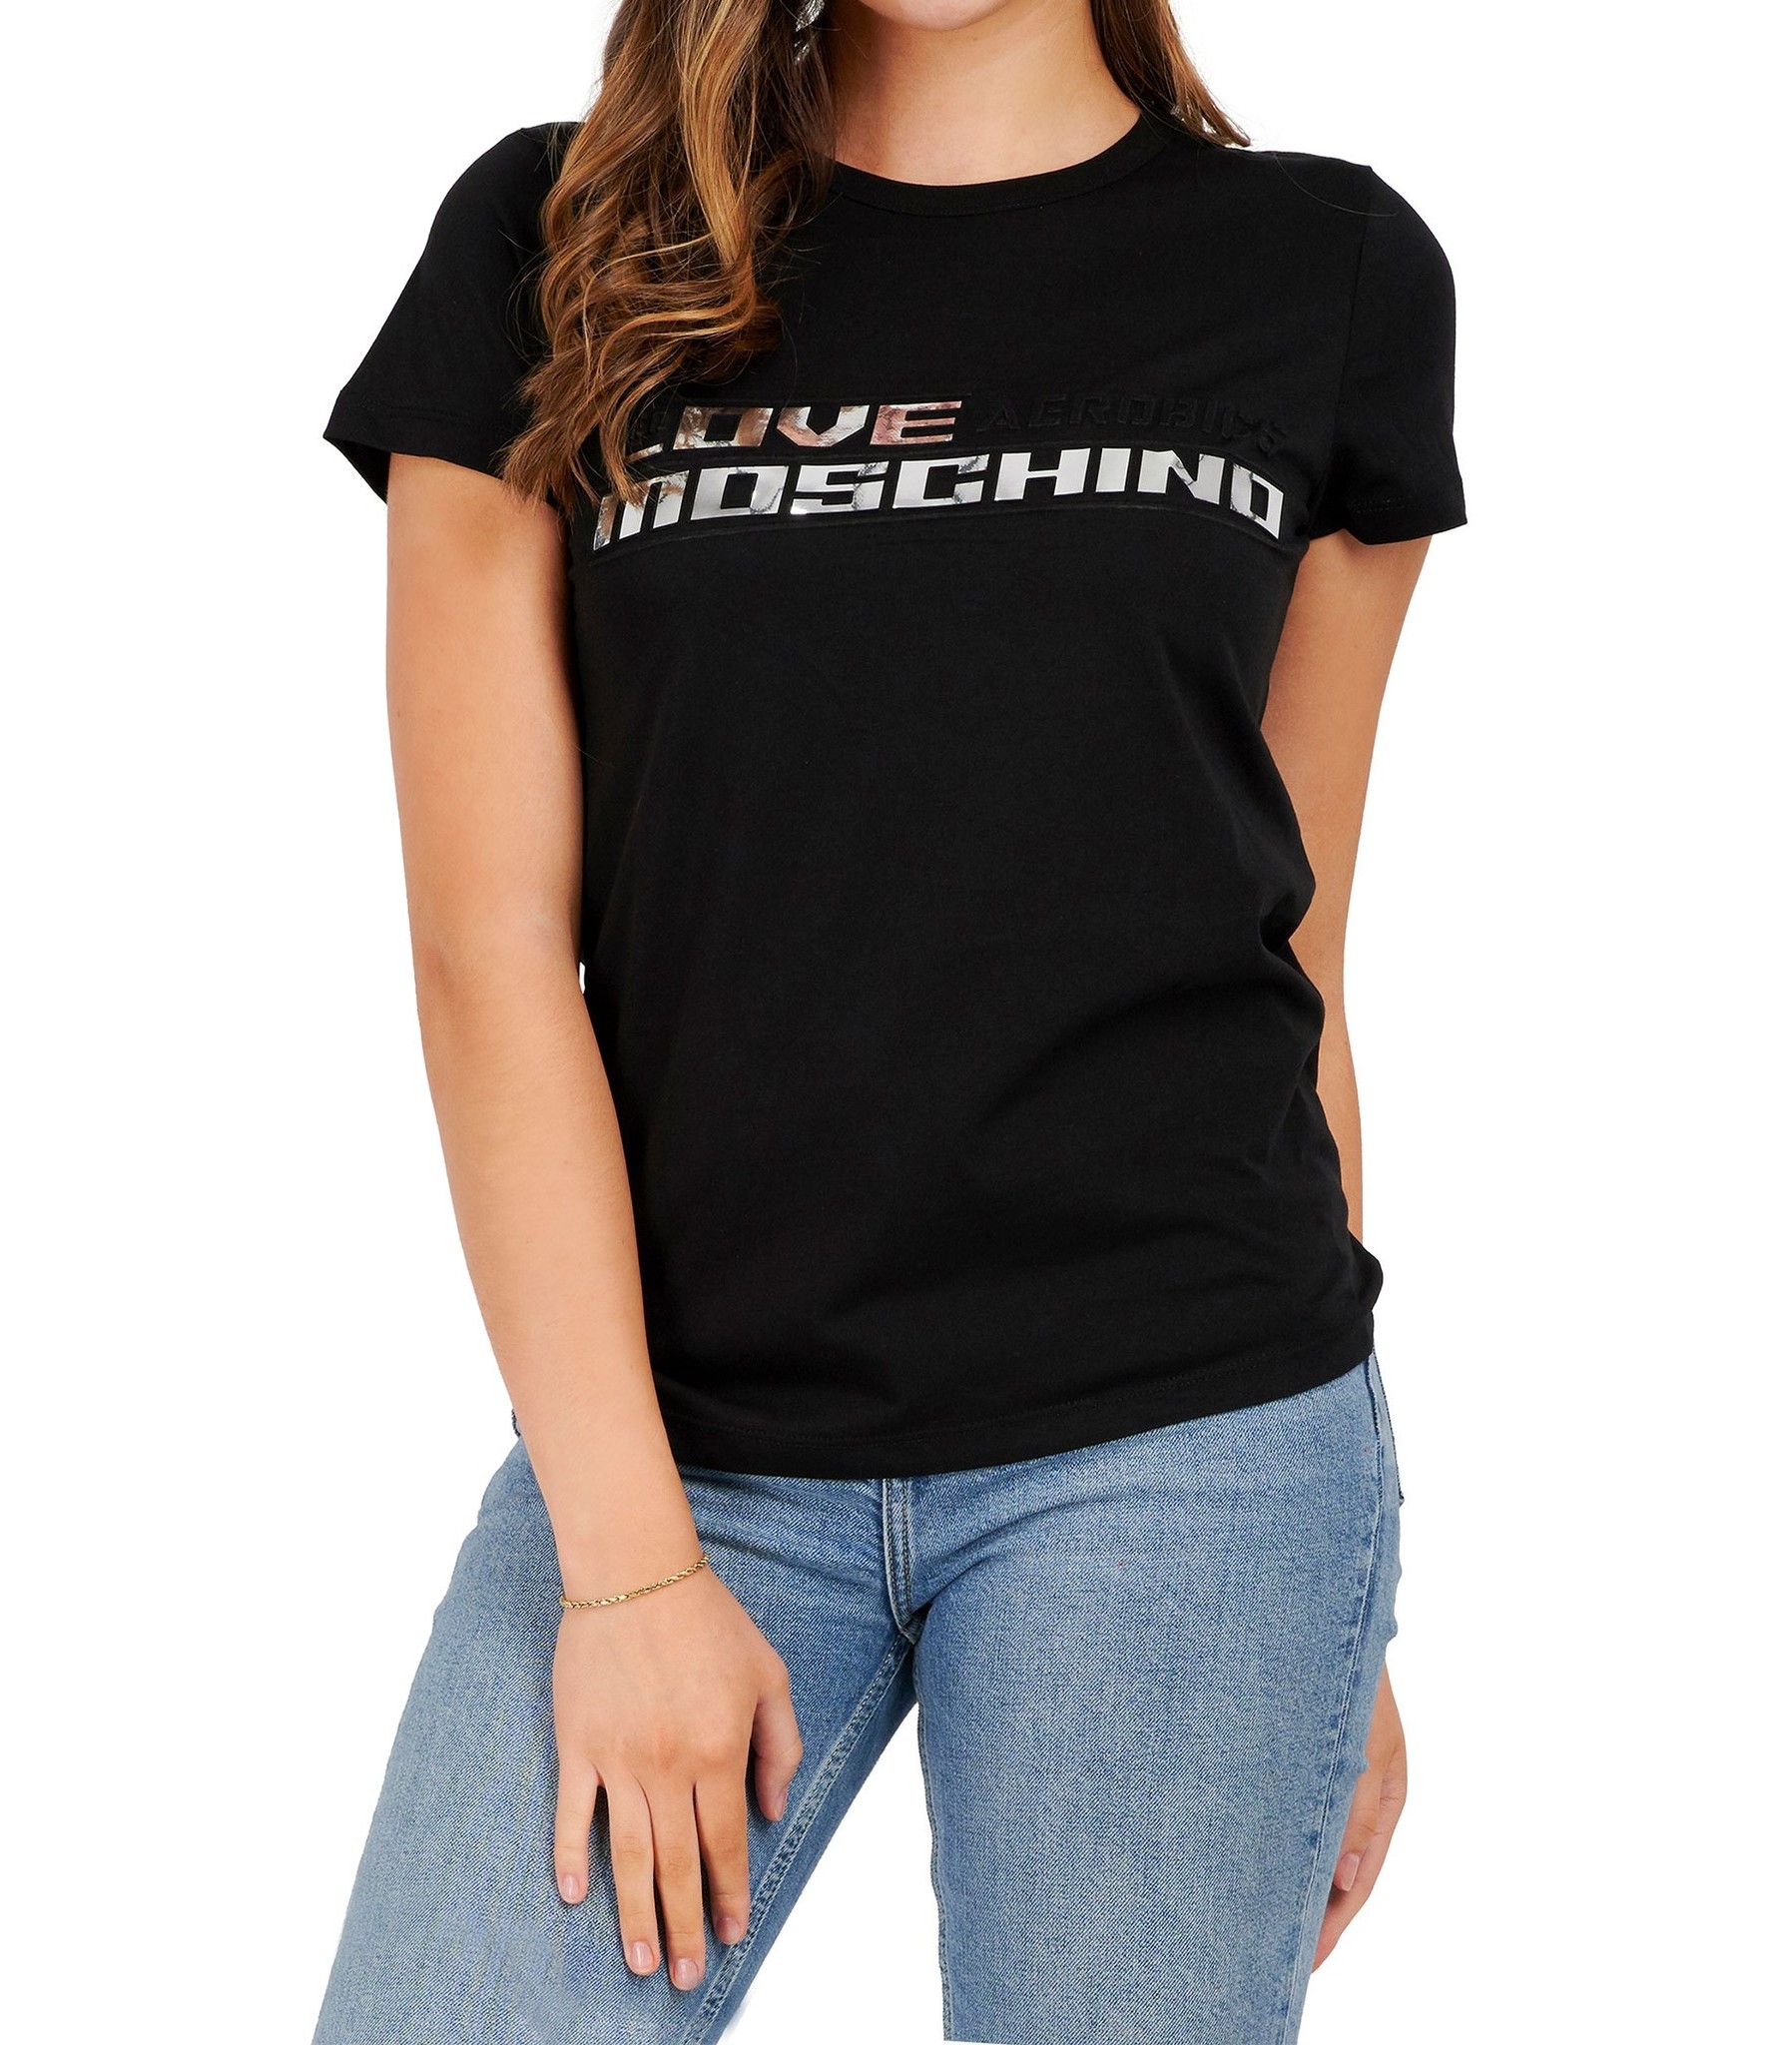 dans Garantie cel Love Moschino : T-shirt Aerobics-Black-W4F731AM3876 - Coats leermode